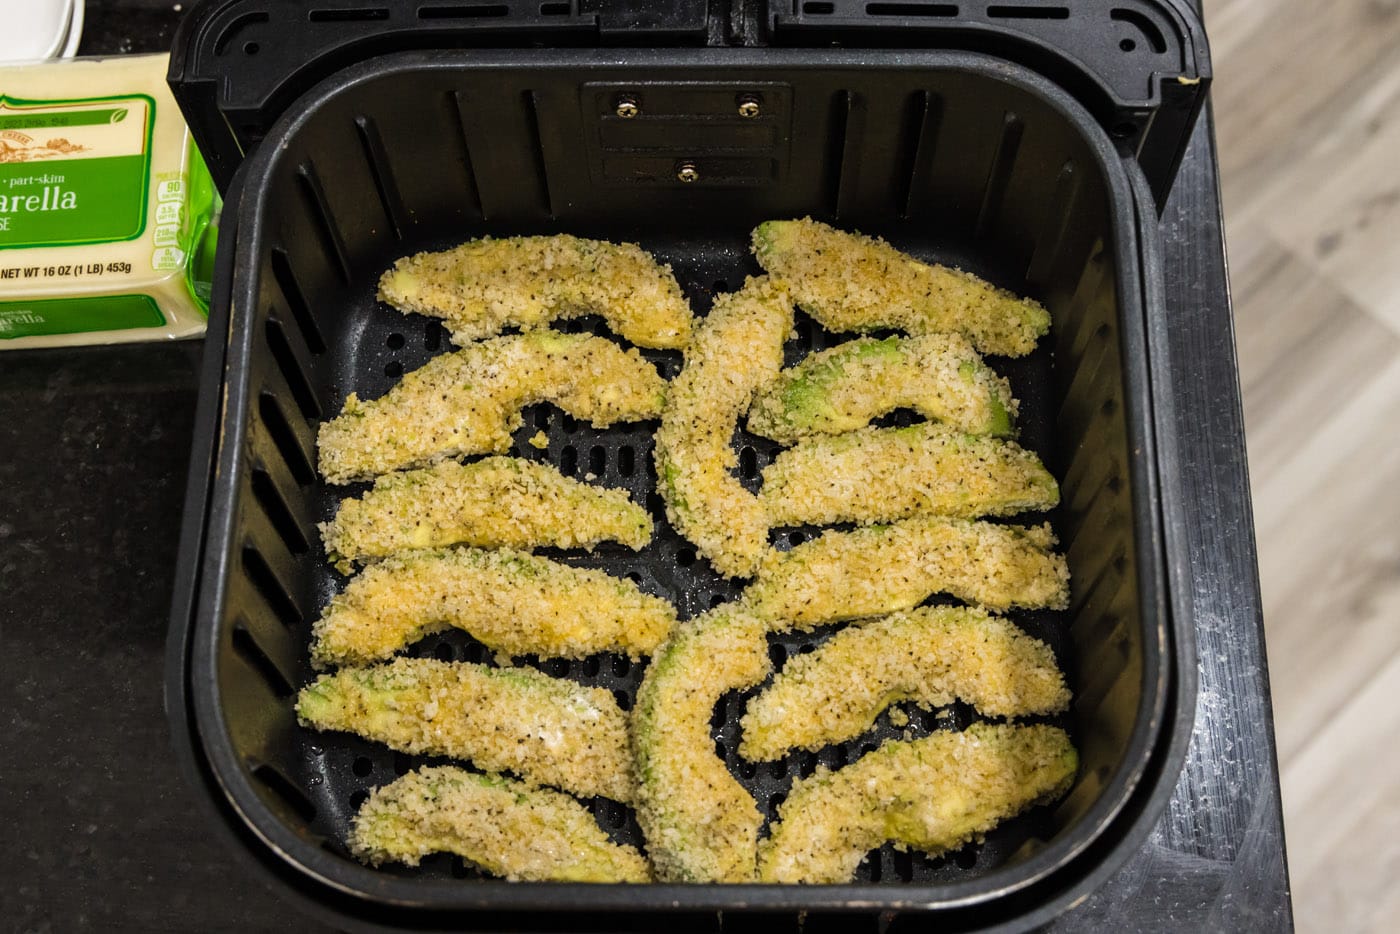 panko coated avocado fries in an air fryer basket